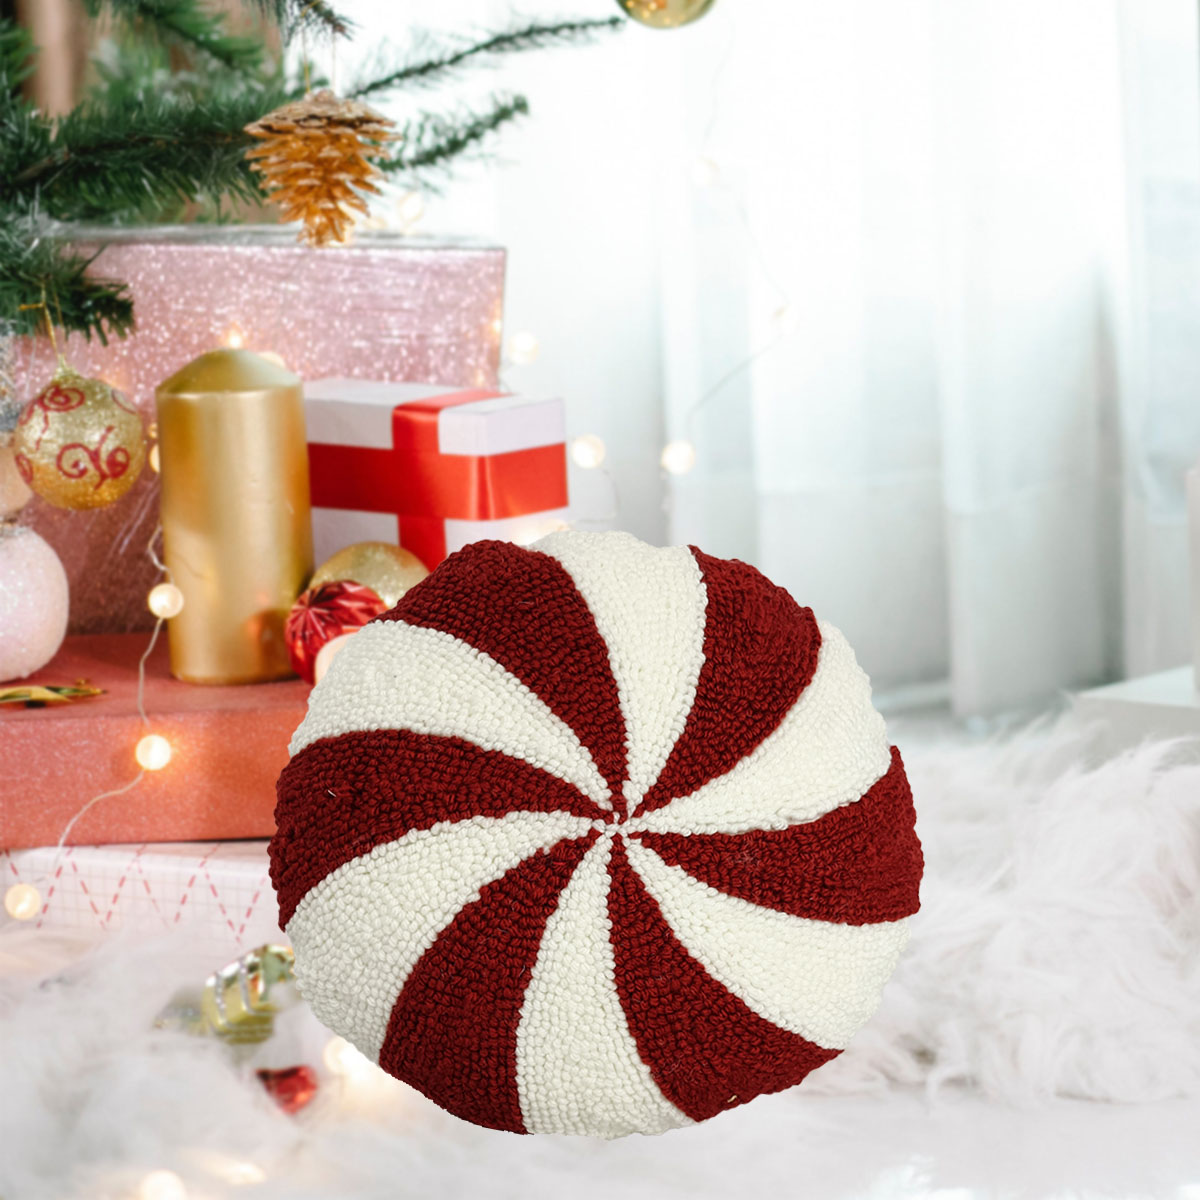 Kerstkussen met rode en witte strepen: feestelijk vakantiedecor